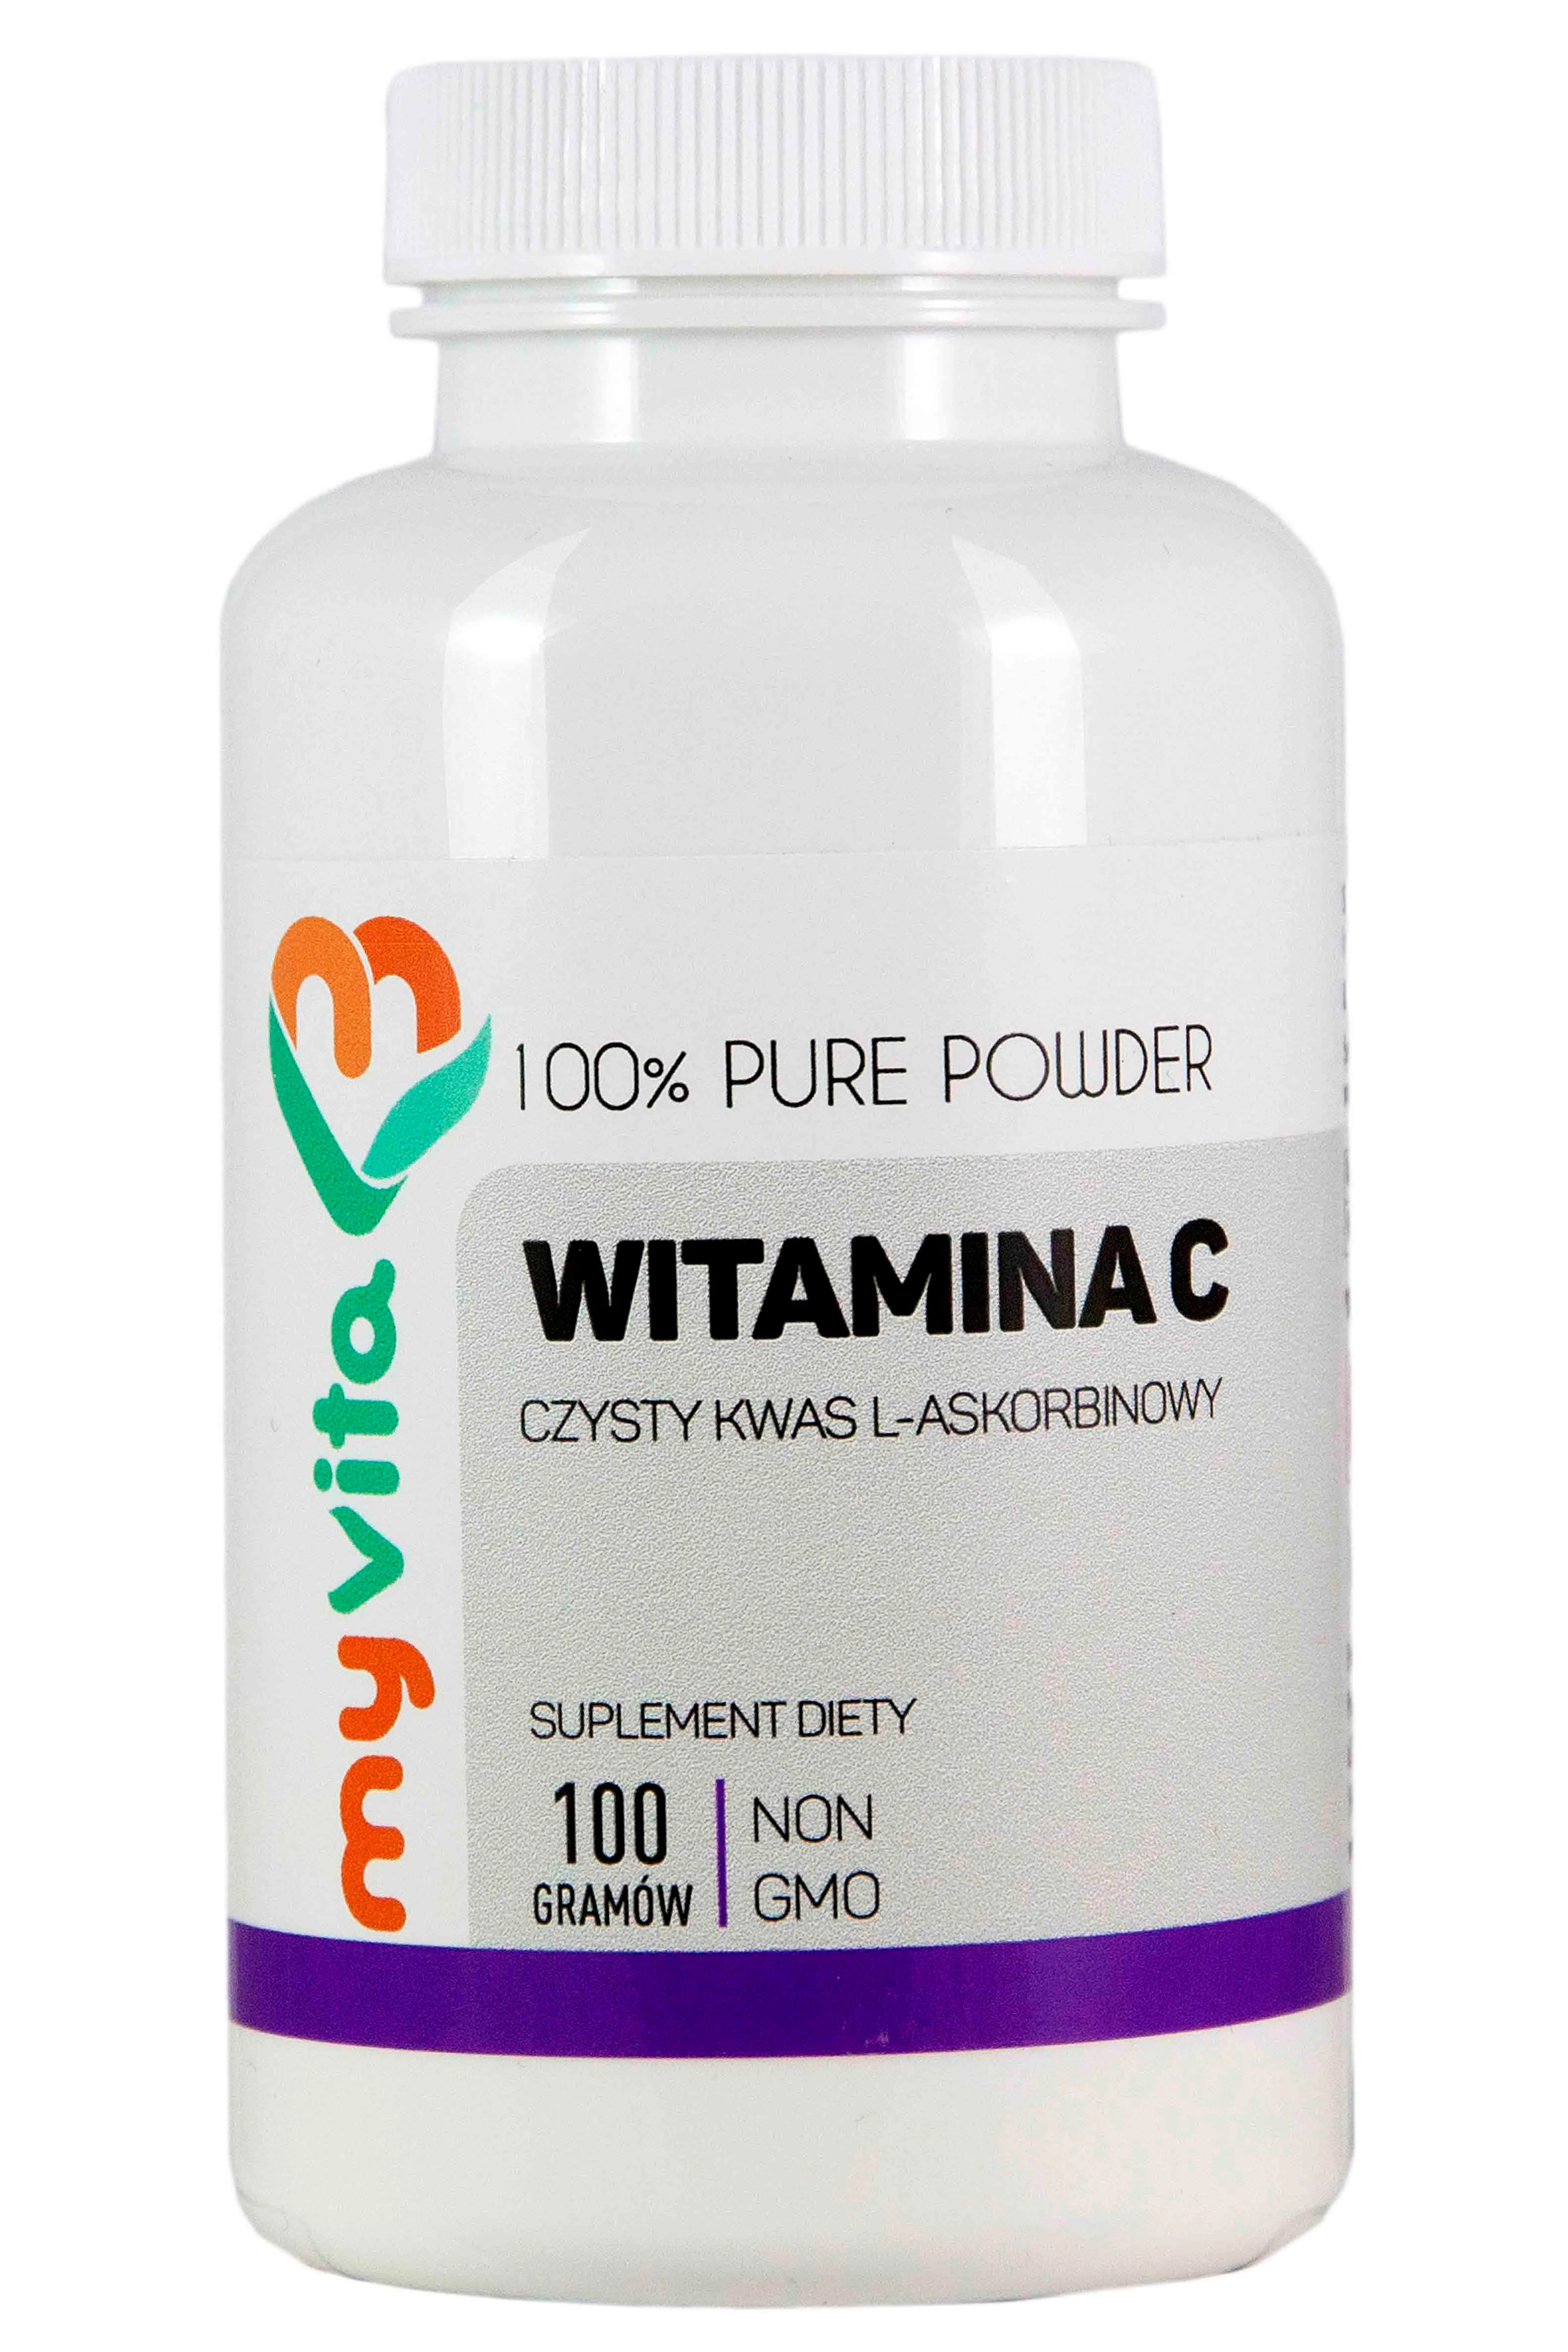 MyVita, Witamina C, kwas L-askorbinowy, suplement diety, proszek, 100g